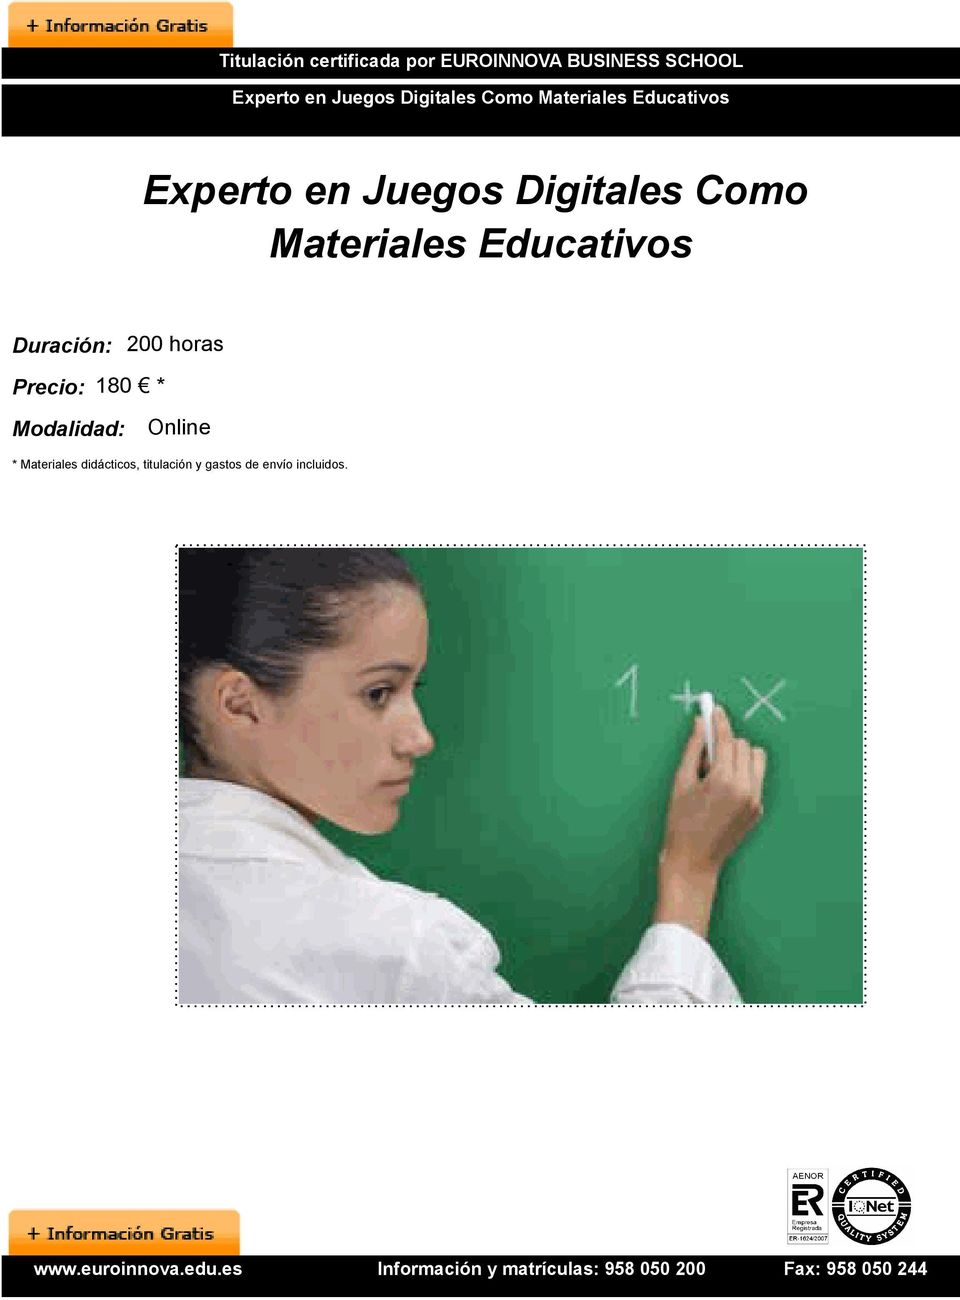 Digitales Como Materiales Educativos Duración: 200 horas Precio: 180